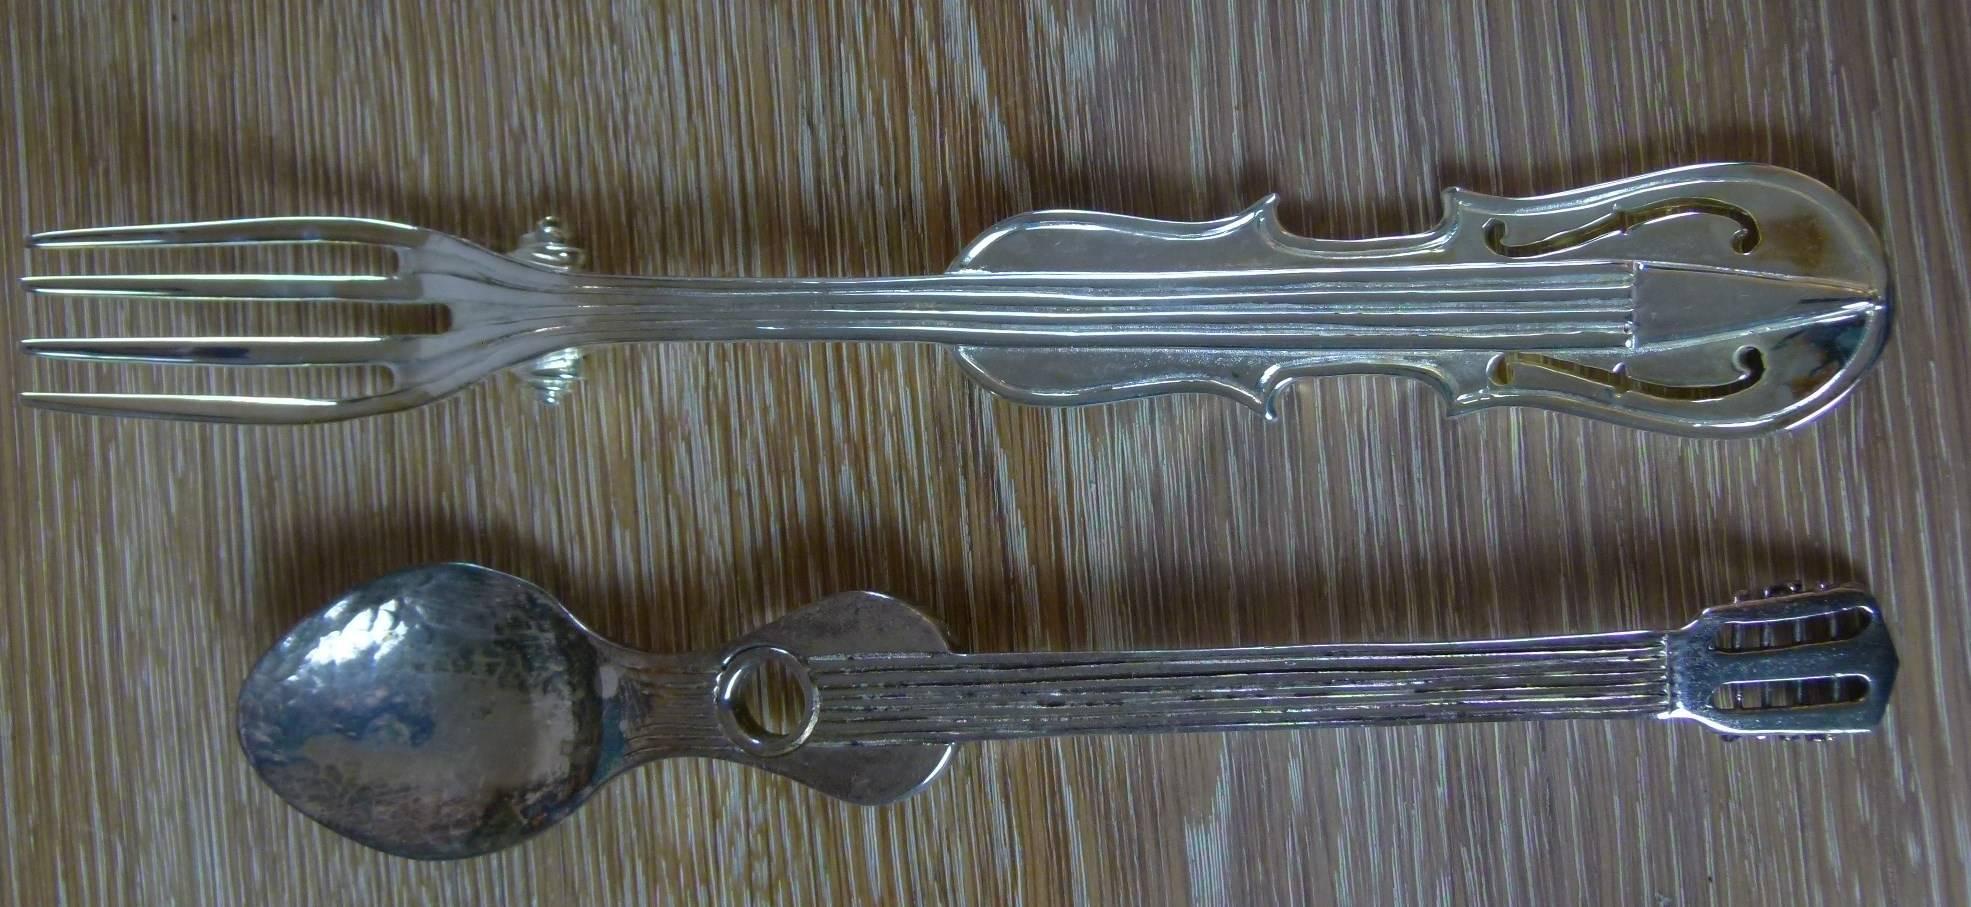 Serveware in Silver Metal Musical Instruments by A. Aparicio 3